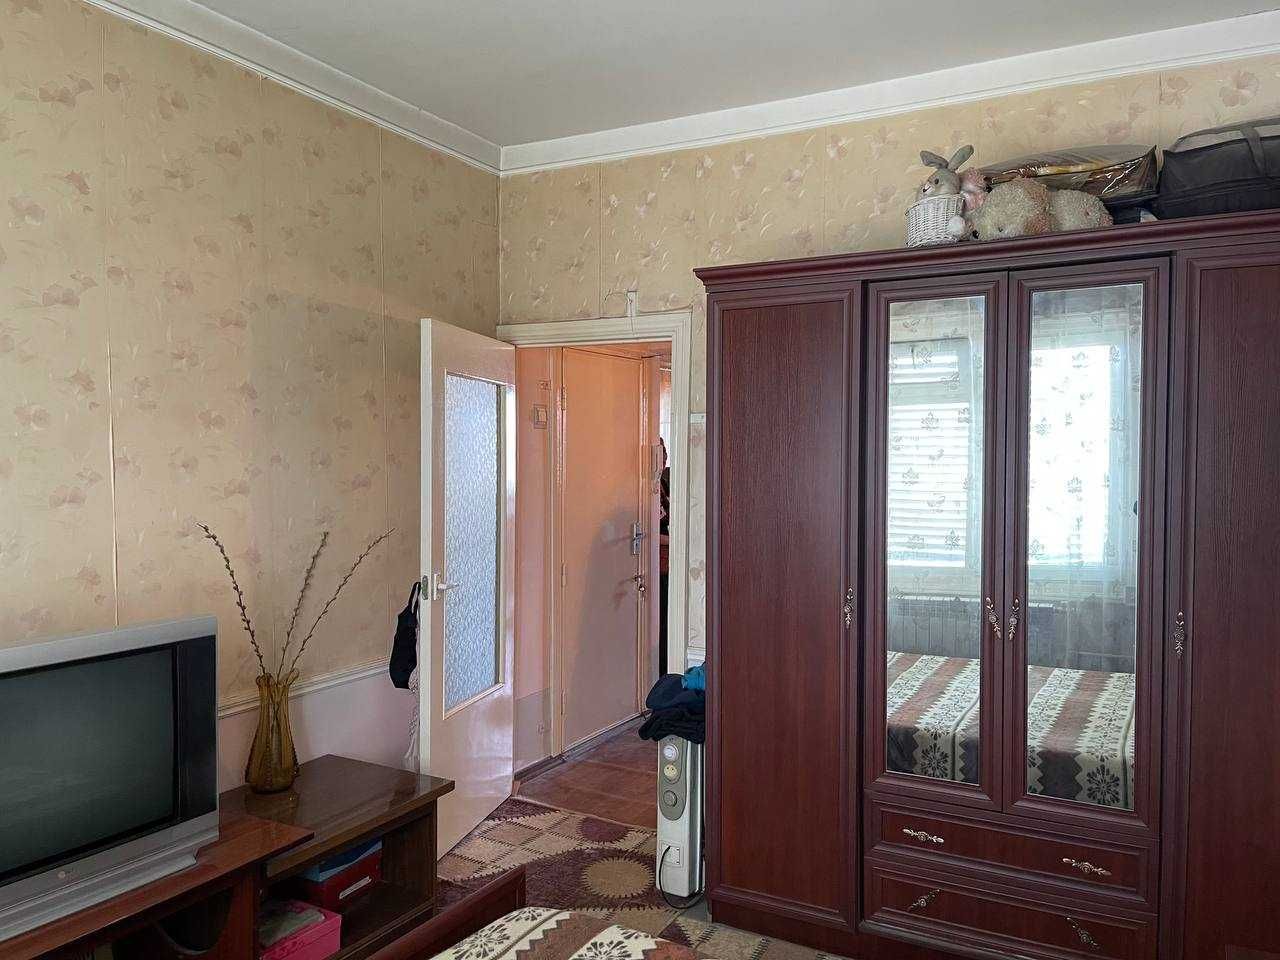 Продаётся квартира Карасув-6 2-х комнатная.